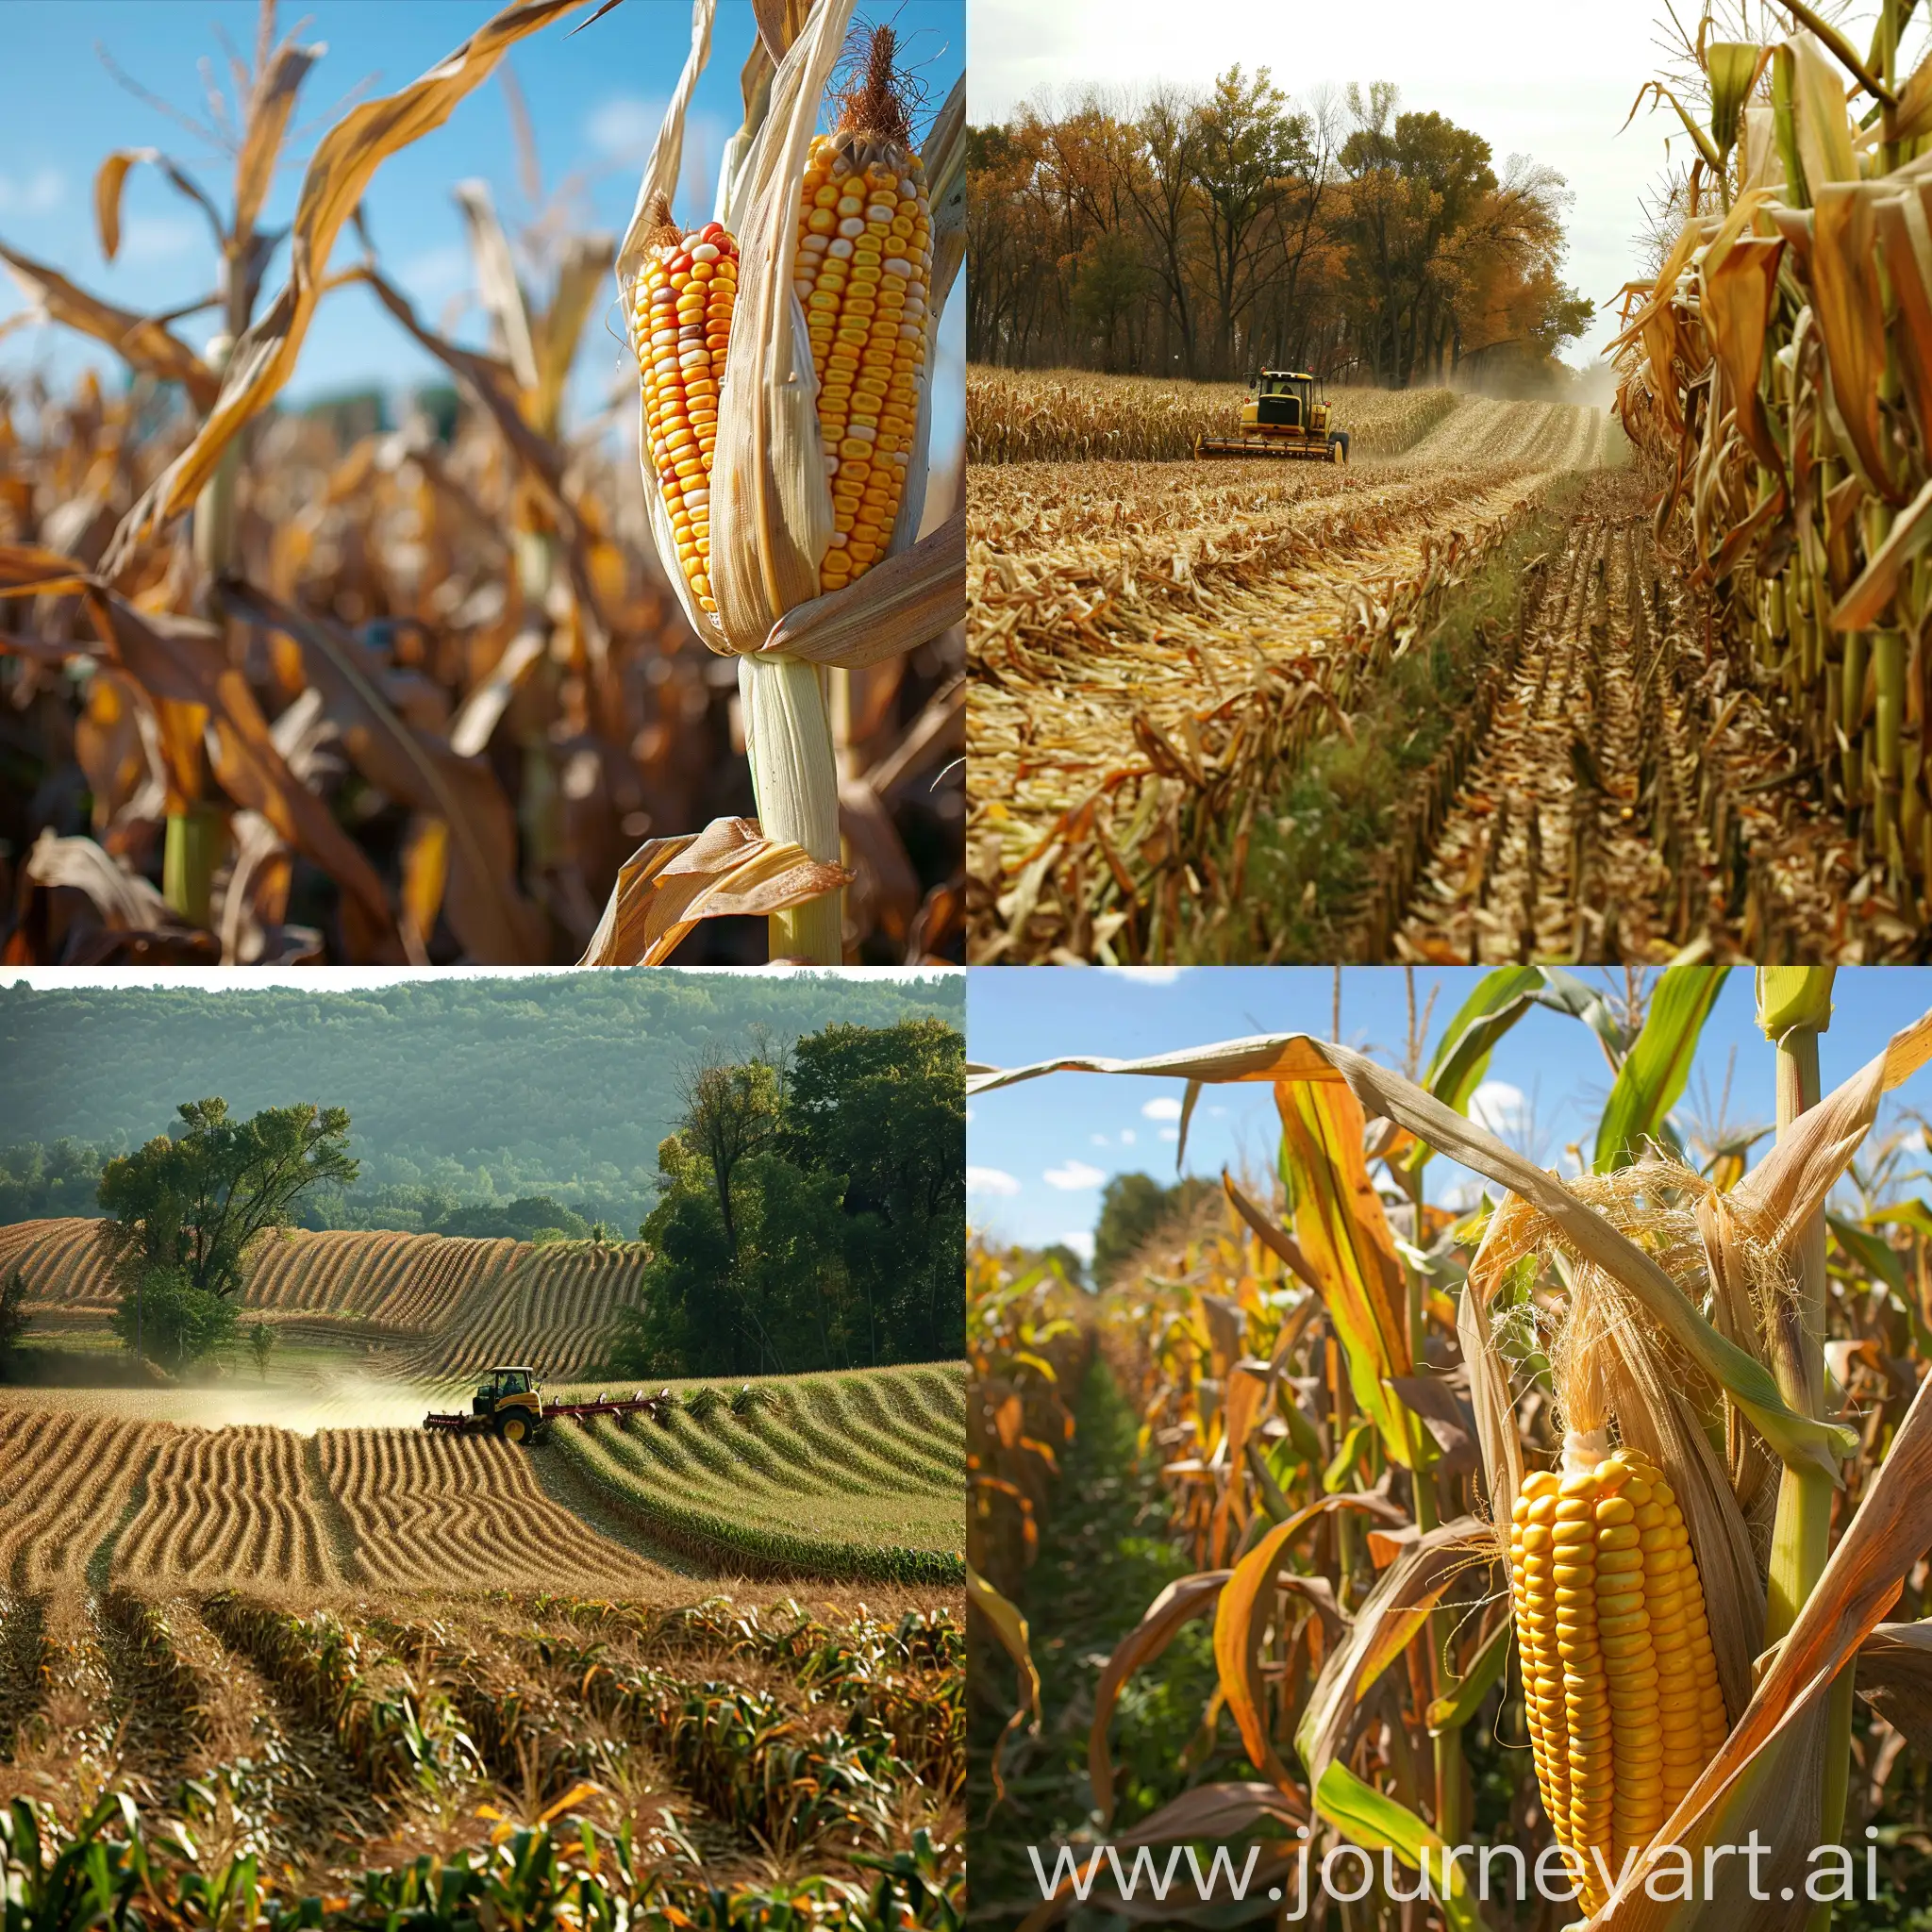 Harvesting-Corn-Field-Scene